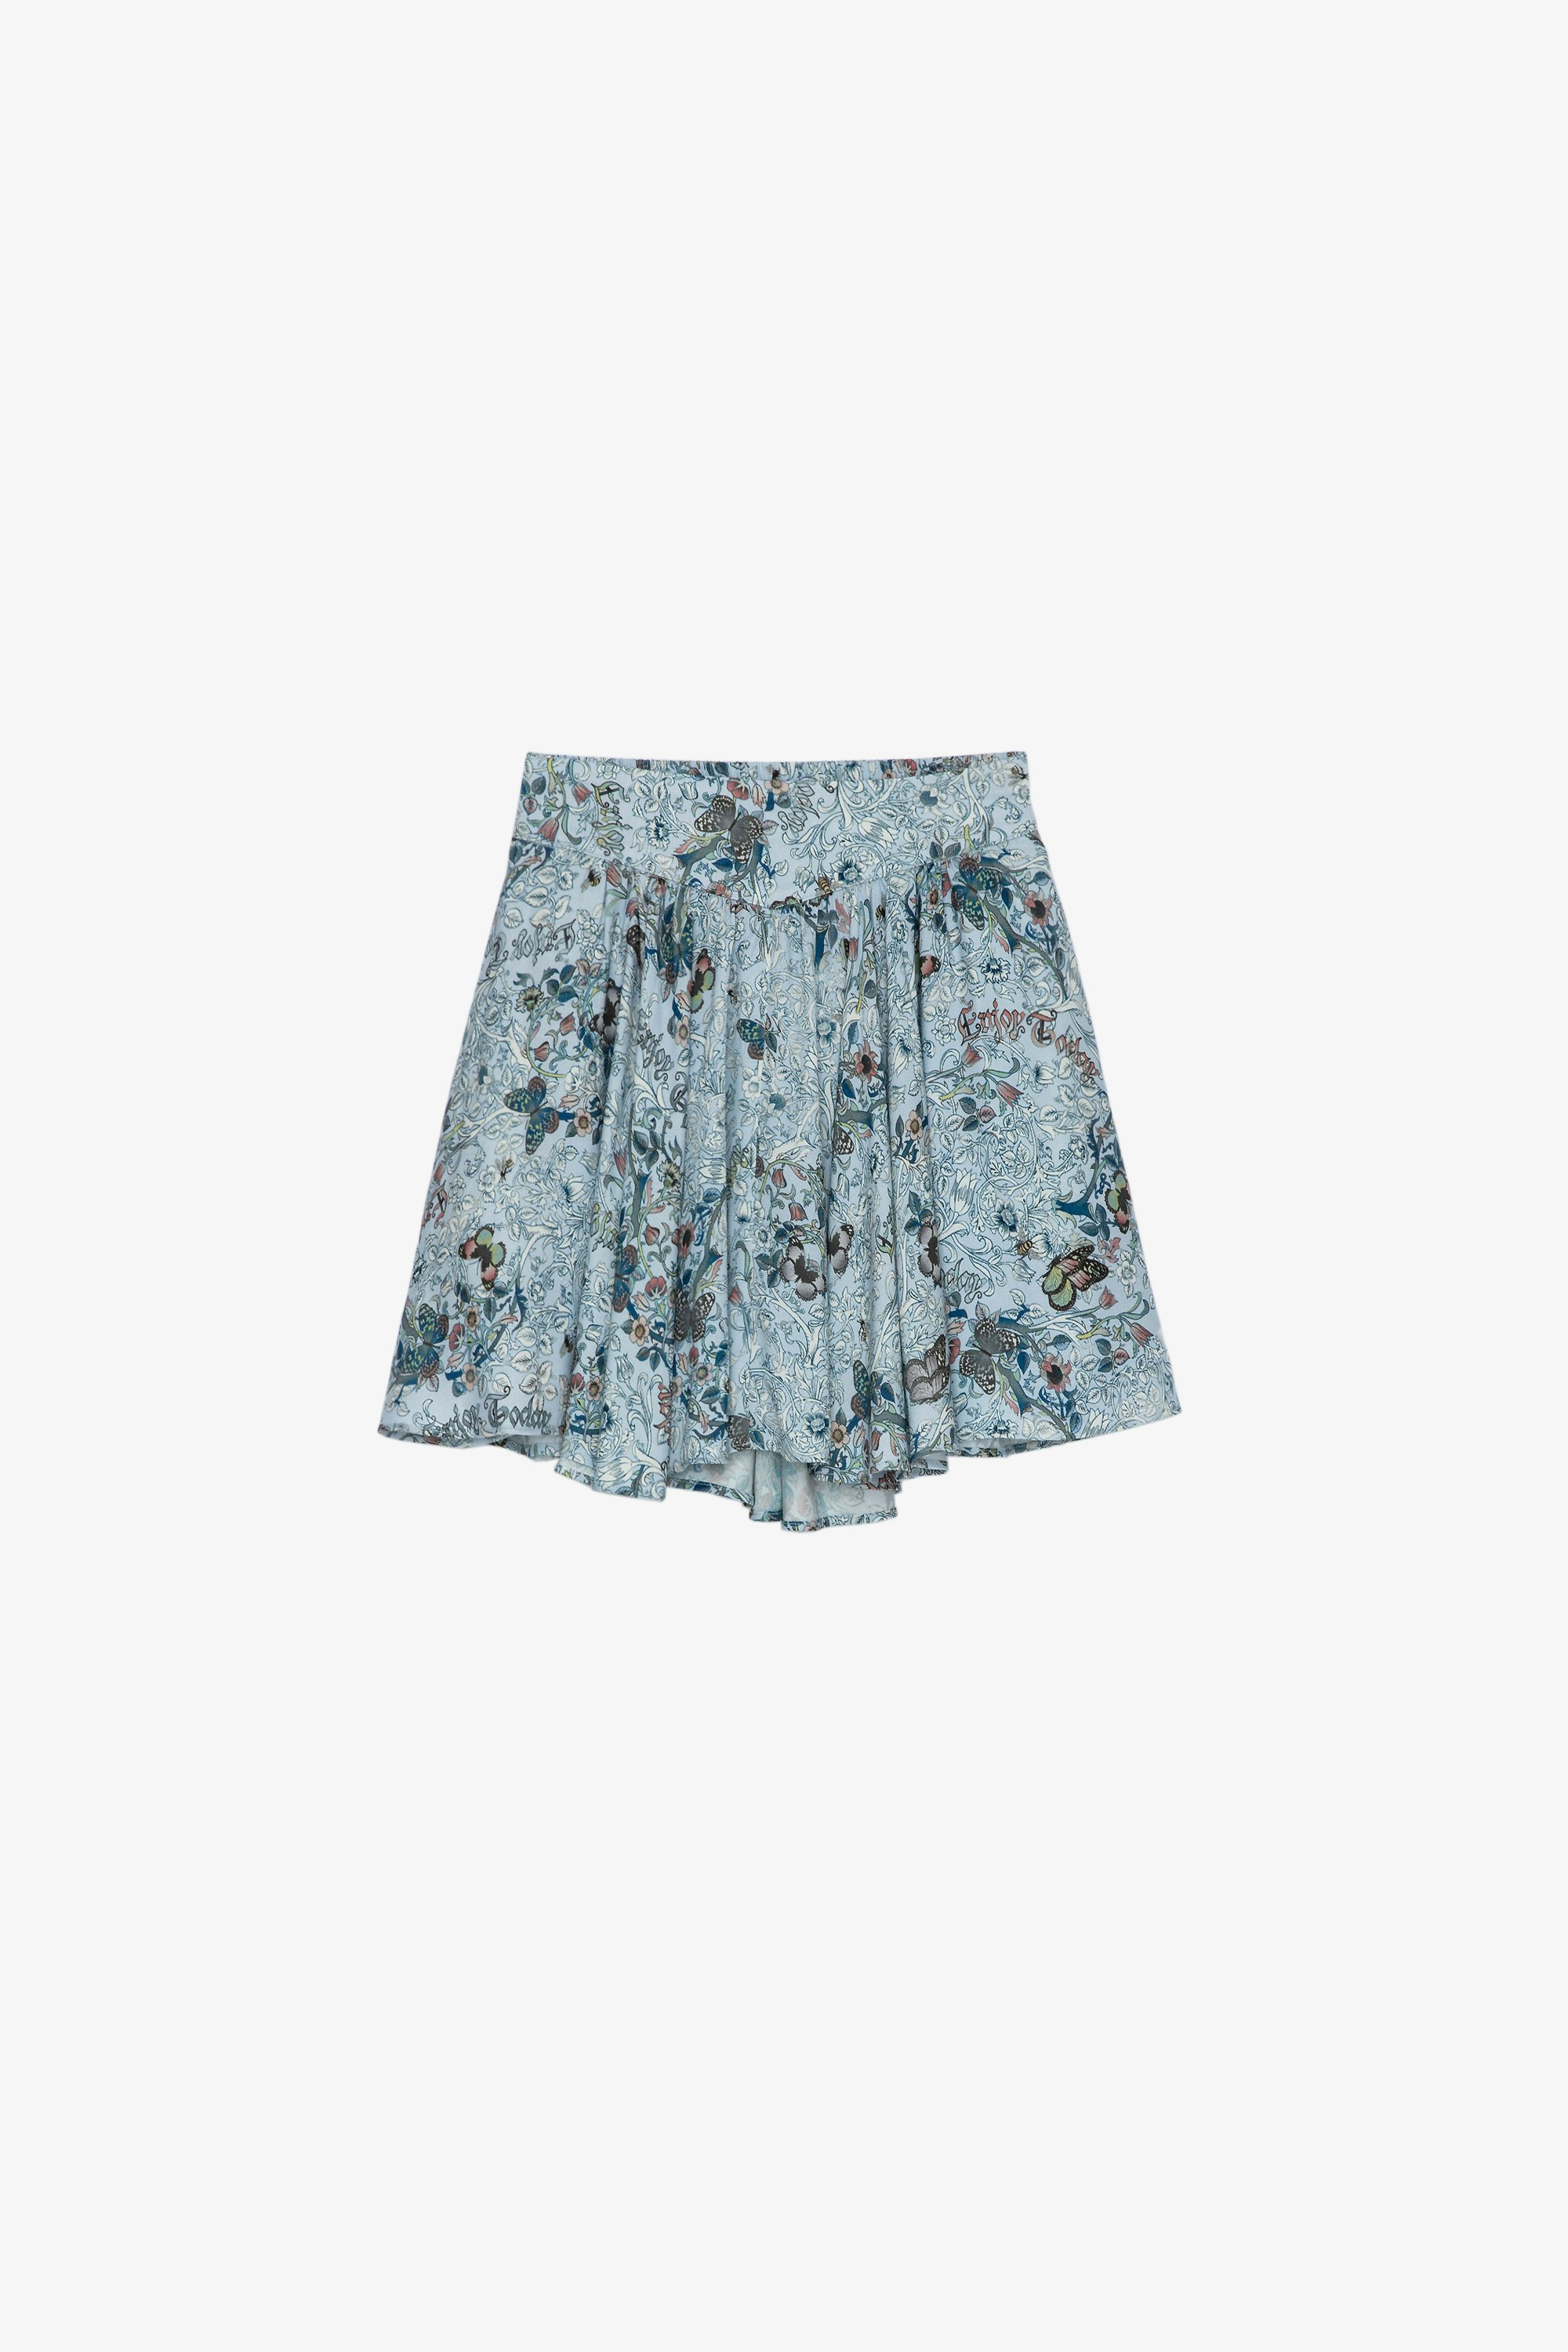 Alexa Kids’ Skirt Children’s sky blue printed short skirt 